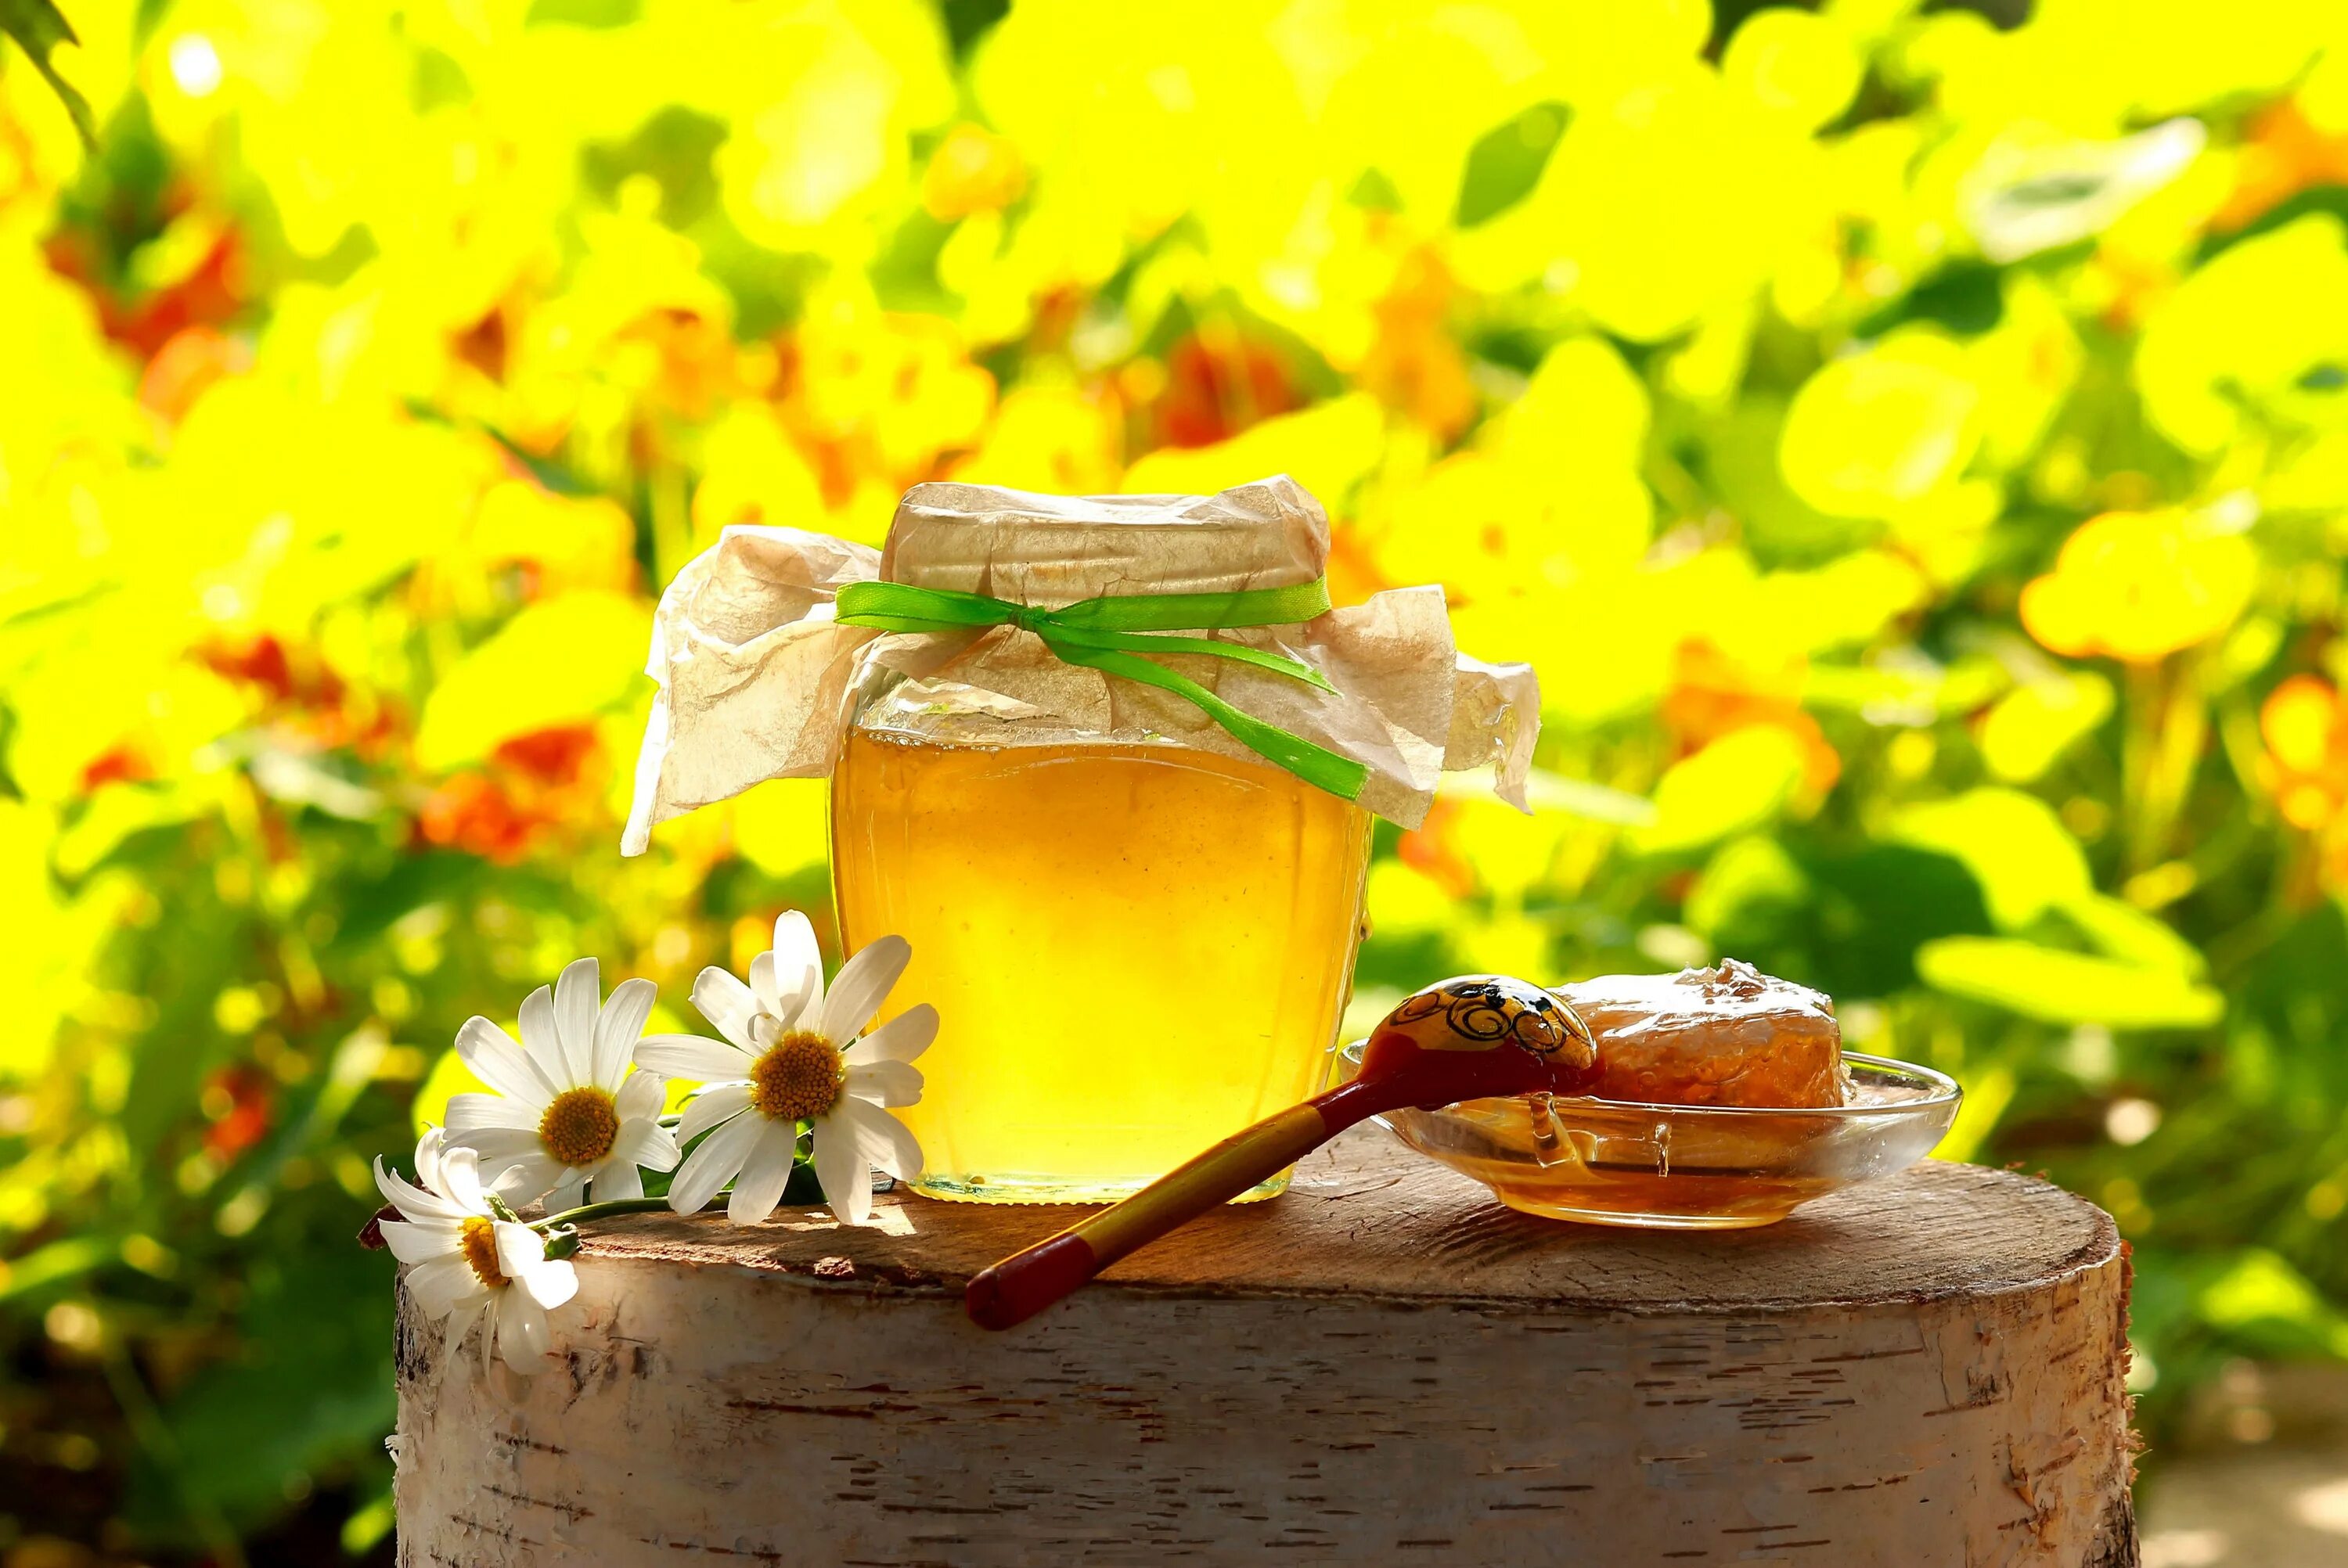 Мед медовый спас разнотравье. Мед в природе. Пчелы мед "Луговой" Алтайское разнотравье. Лето в баночке. Краса мед